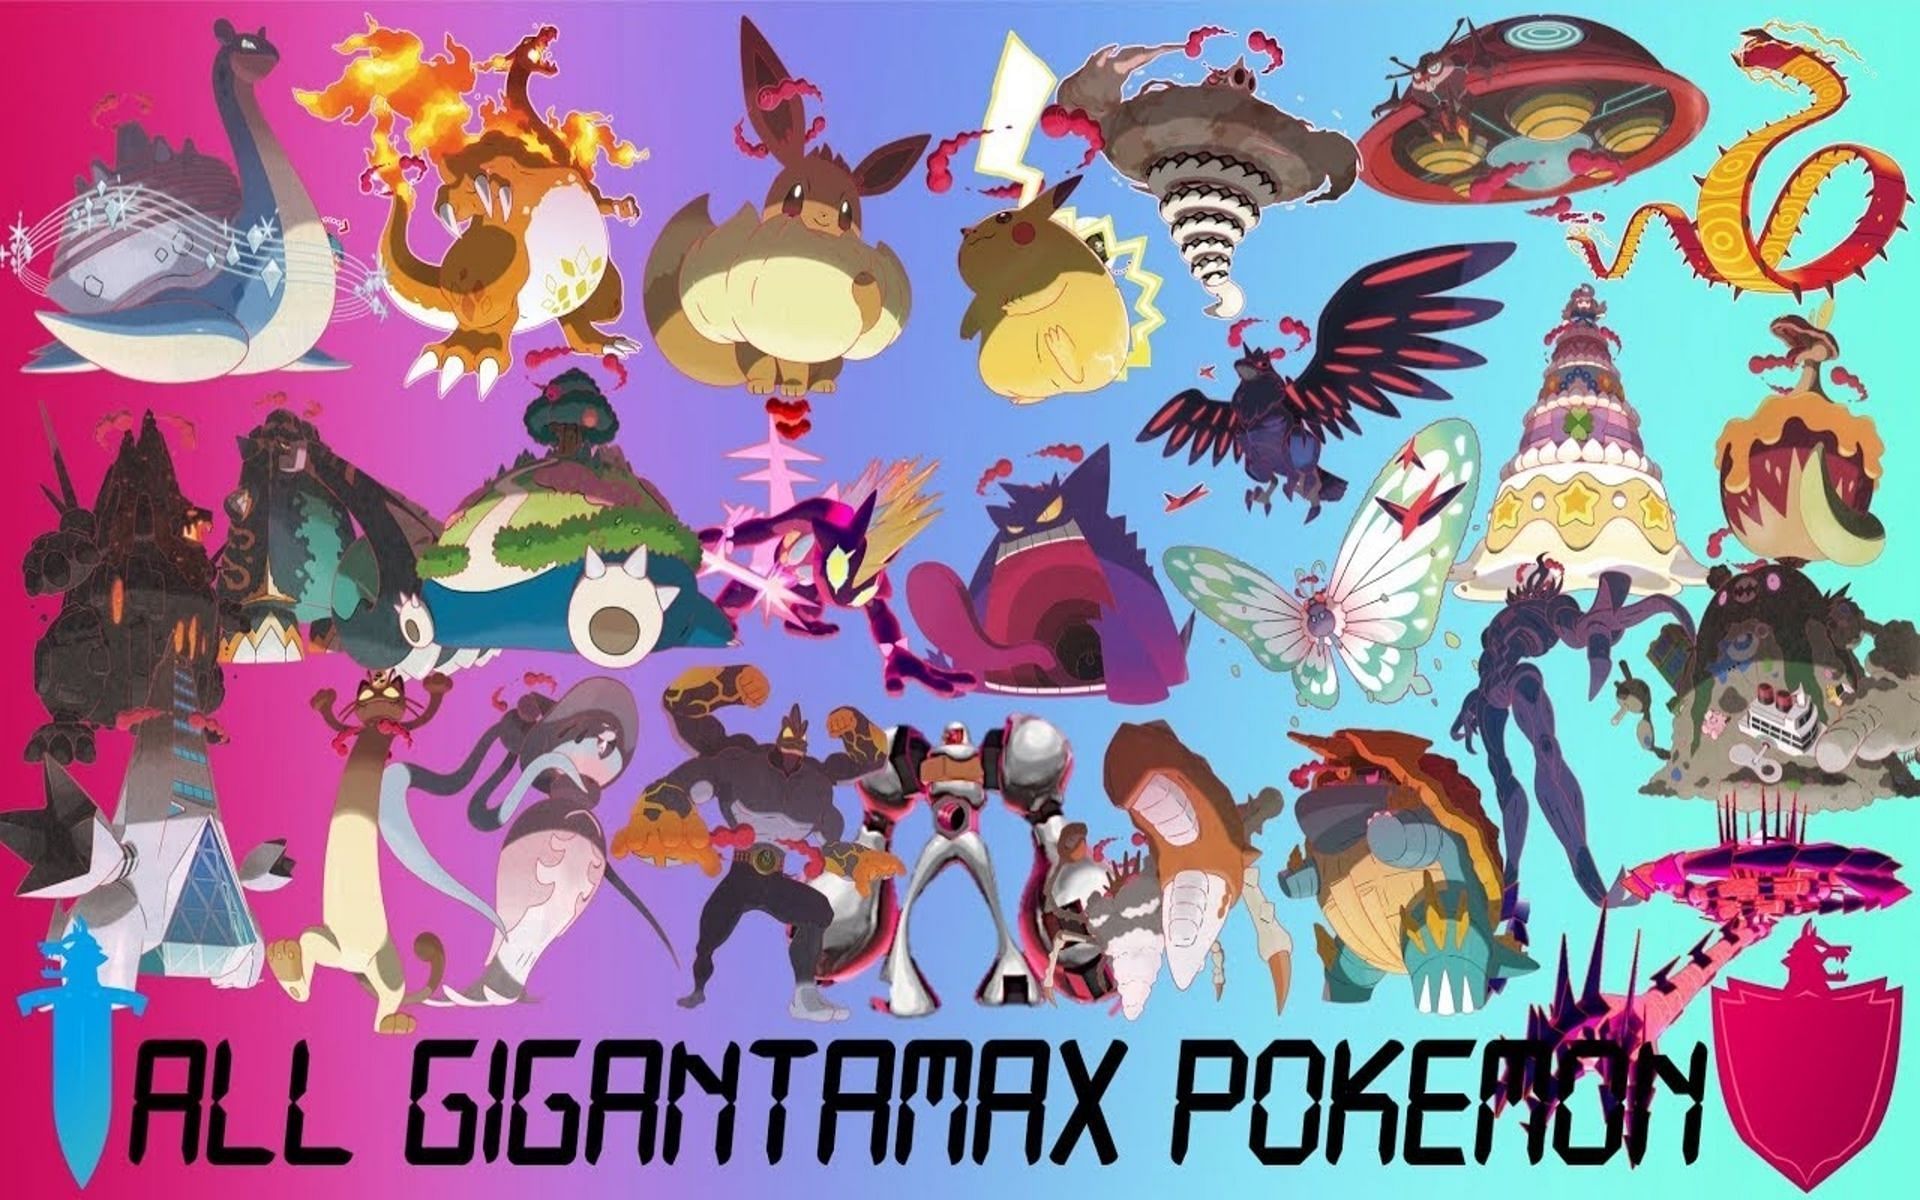 Even more Gigantamax forms got added with the DLC (Image via Tom Salazar)